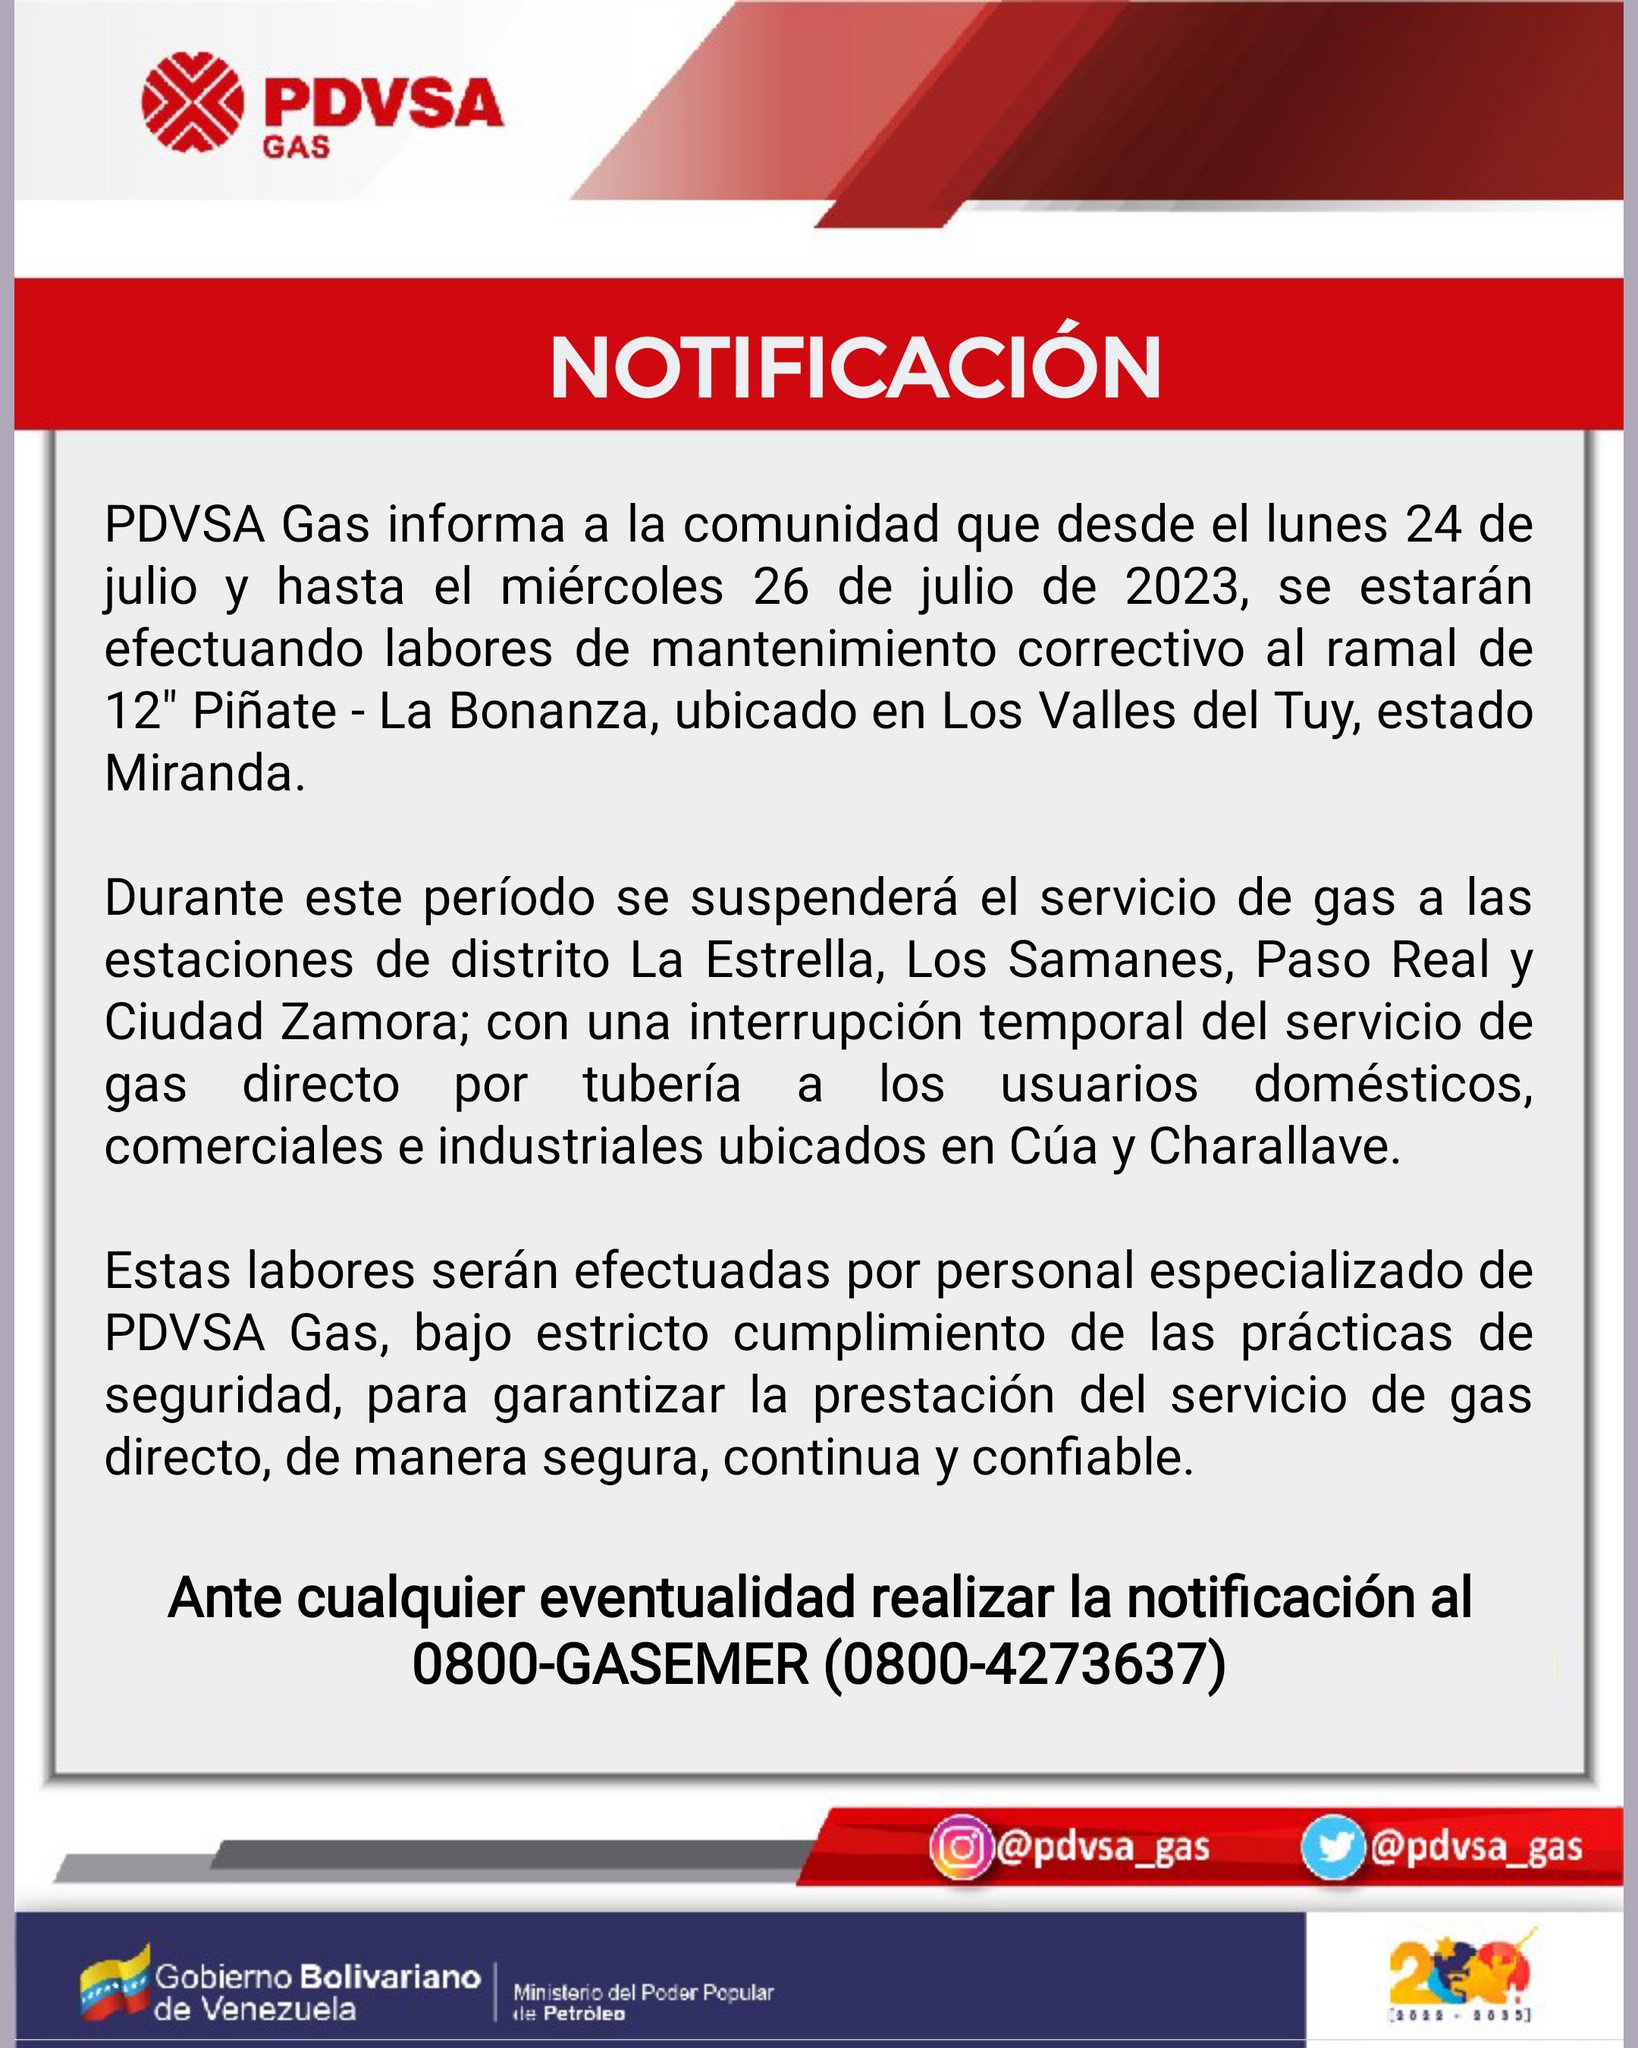 PDVSA suspenderá del 24 al 26 de julio el servicio de gas directo